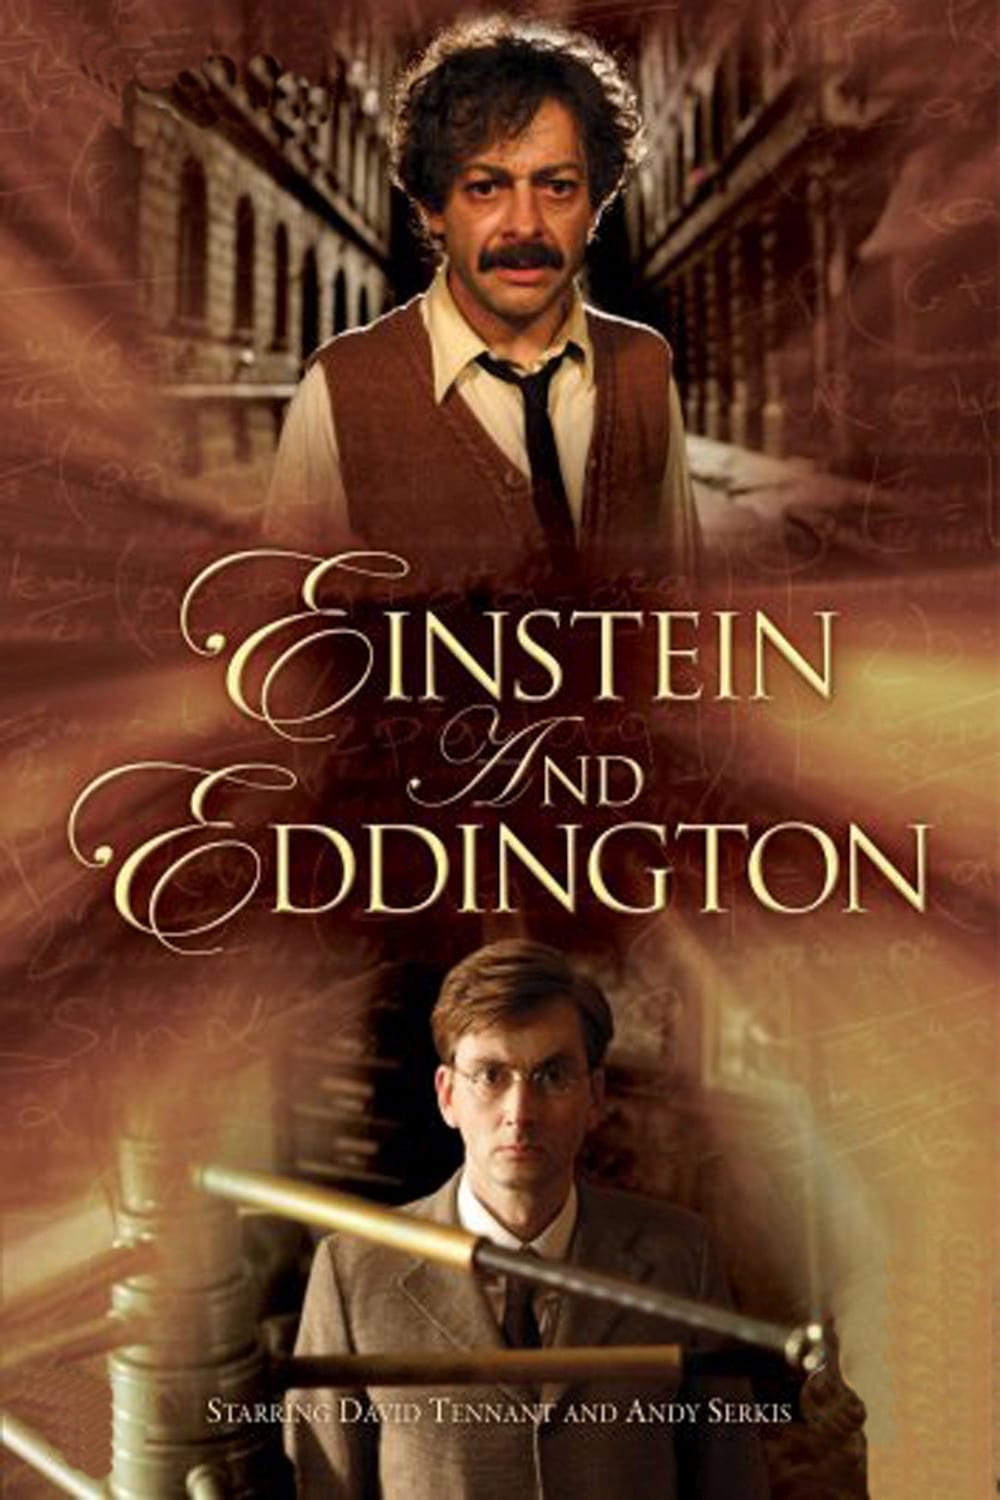 دانلود فیلم Einstein and Eddington 2008 - انیشتین و ادینگتون